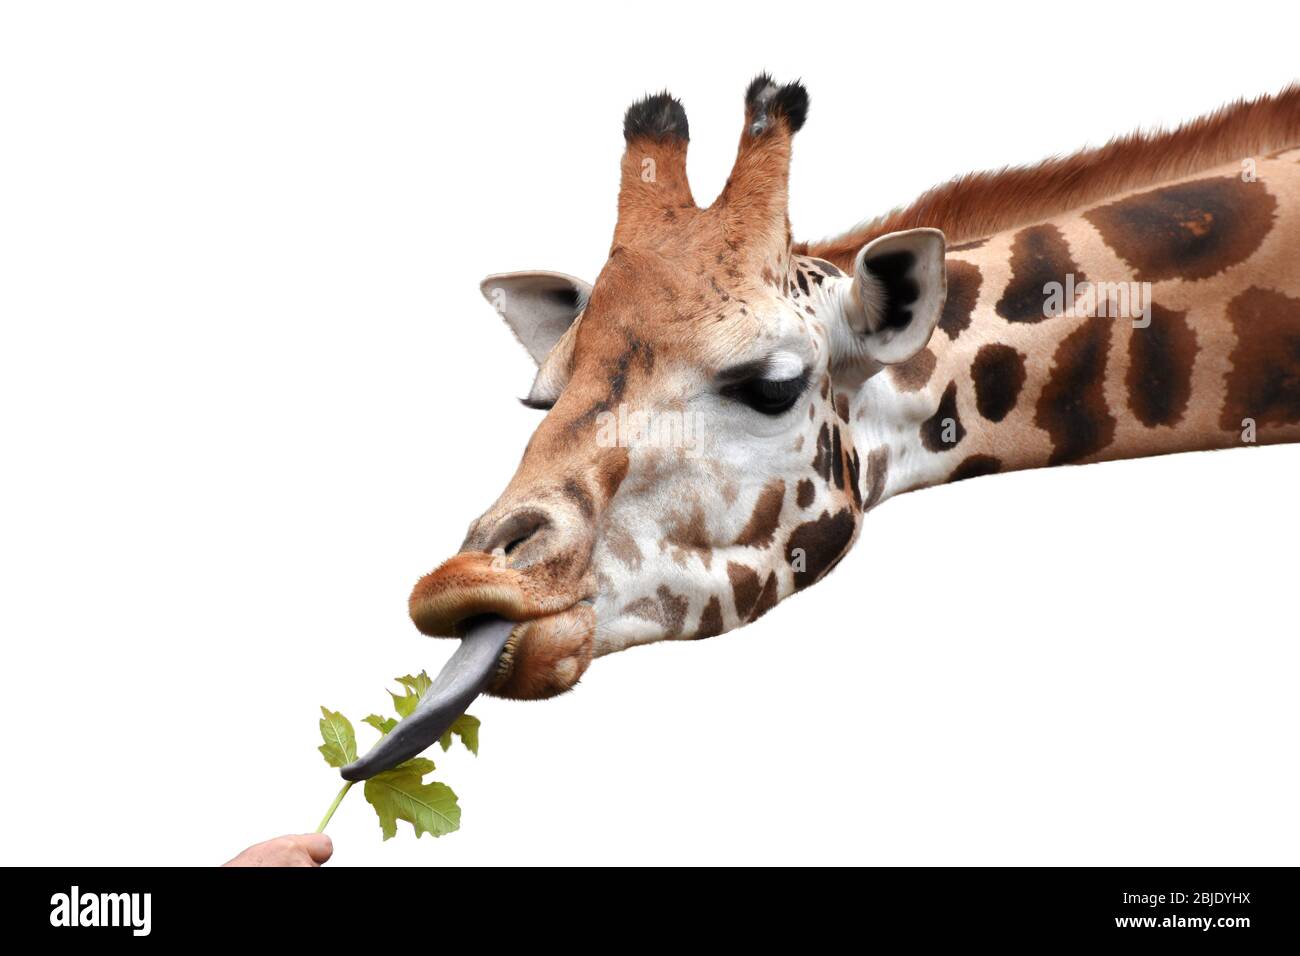 Giraffe manger la feuille verte hors de la main humaine. Fond blanc. Banque D'Images